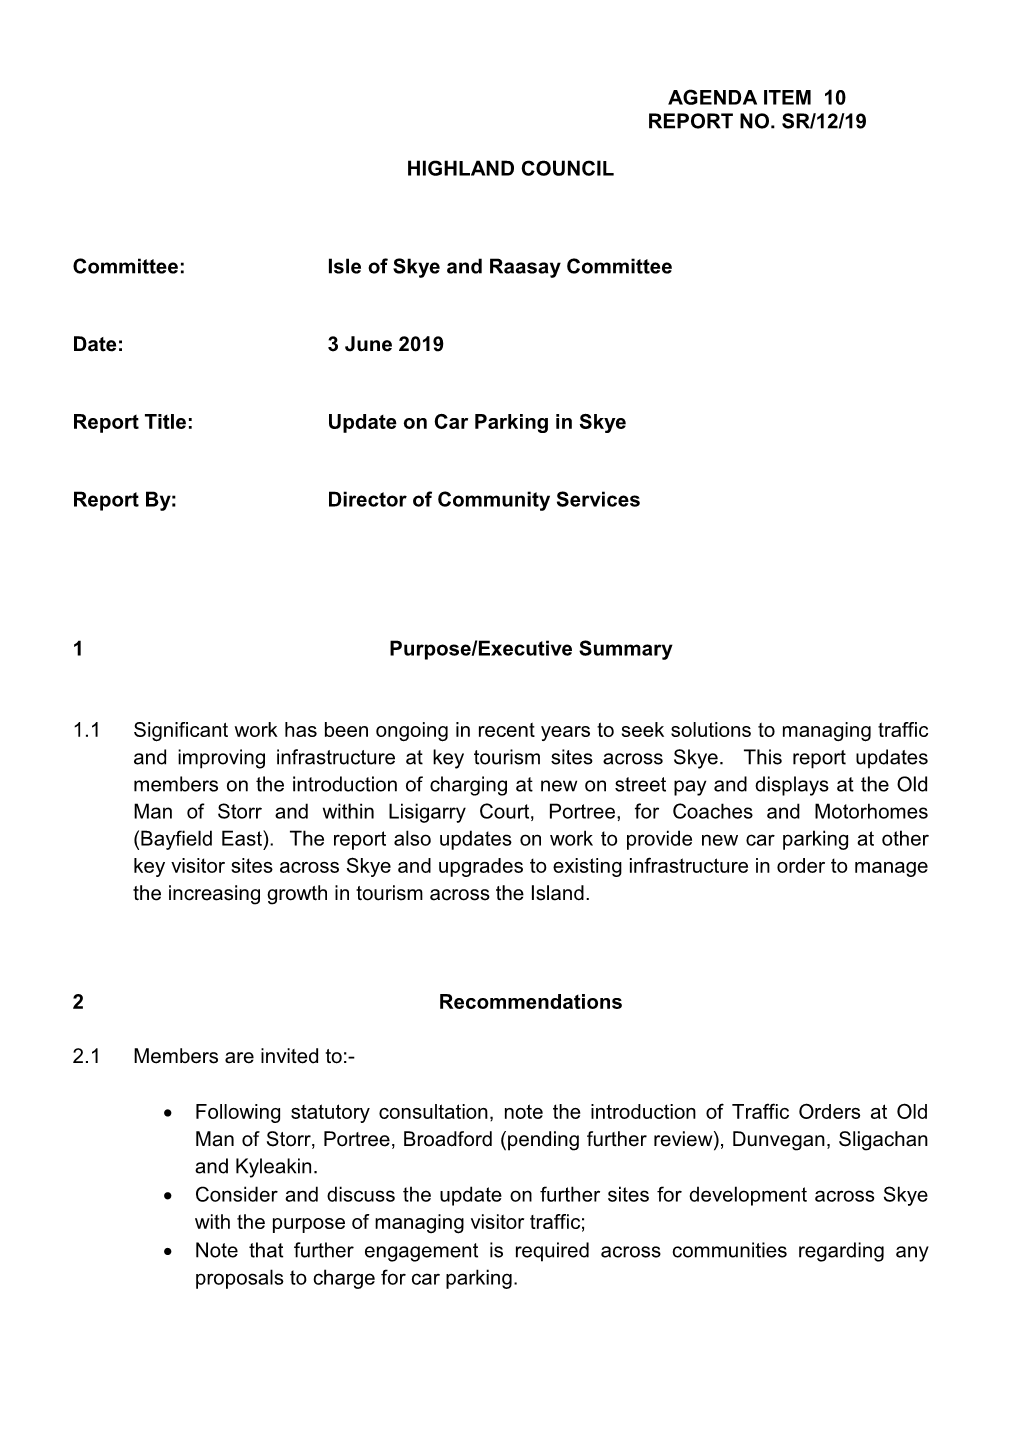 Item 10 Update on Car Parking in Skye